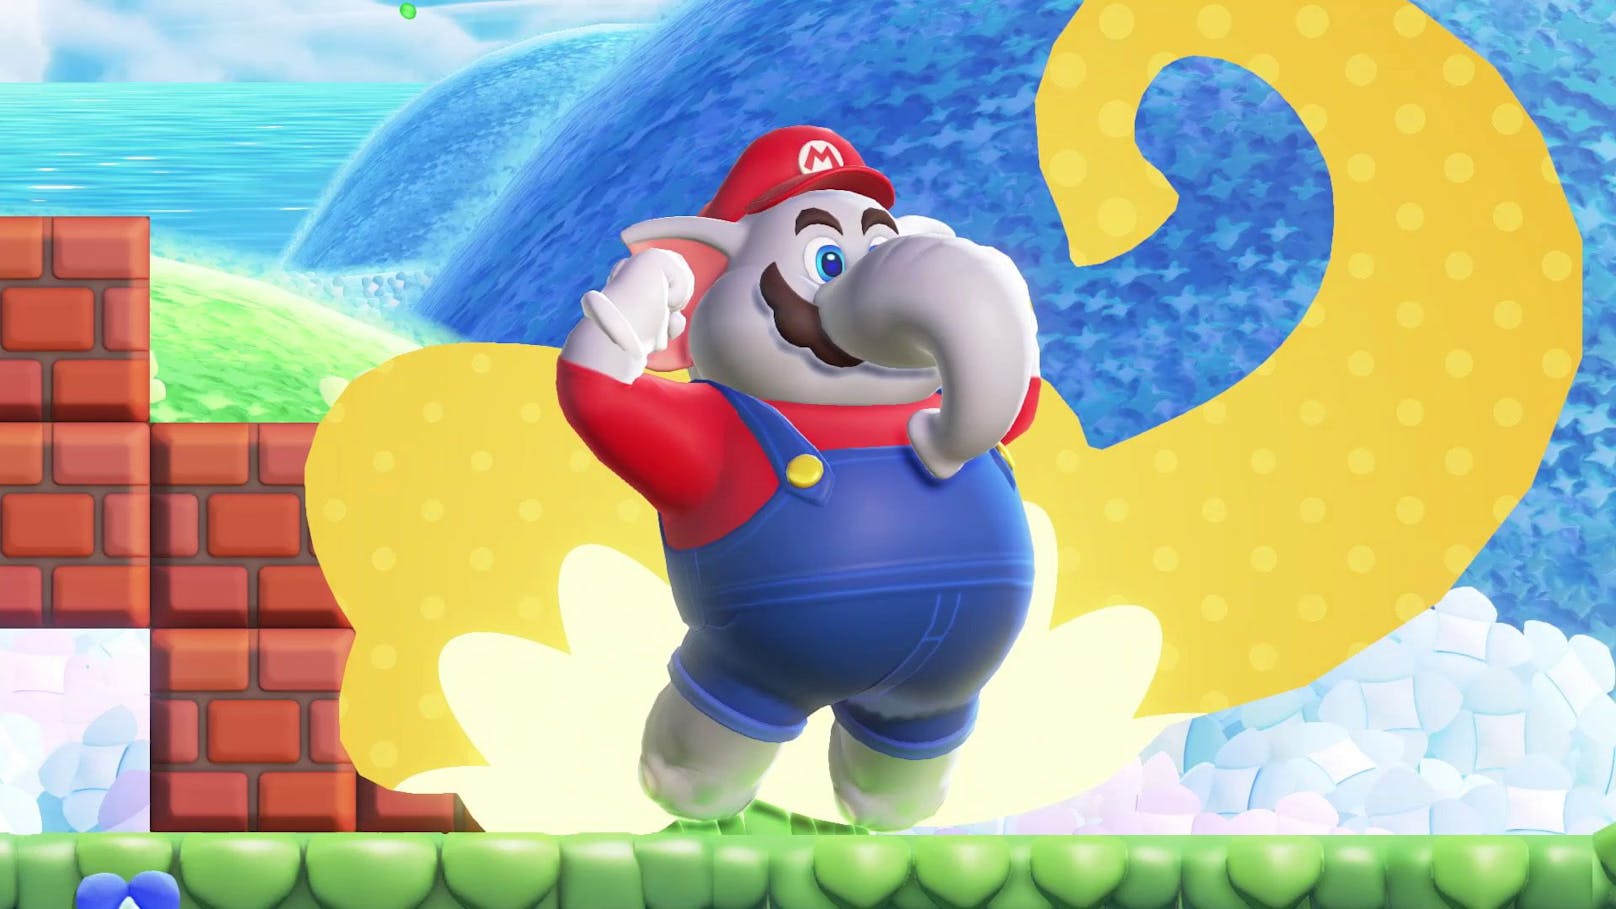 Mutanten-Mario? Das geschieht mit der neuen Elefantenfrucht. Das neue "Super Mario Bros. Wonder" ist ein richtiges Videospiel-Wunder.